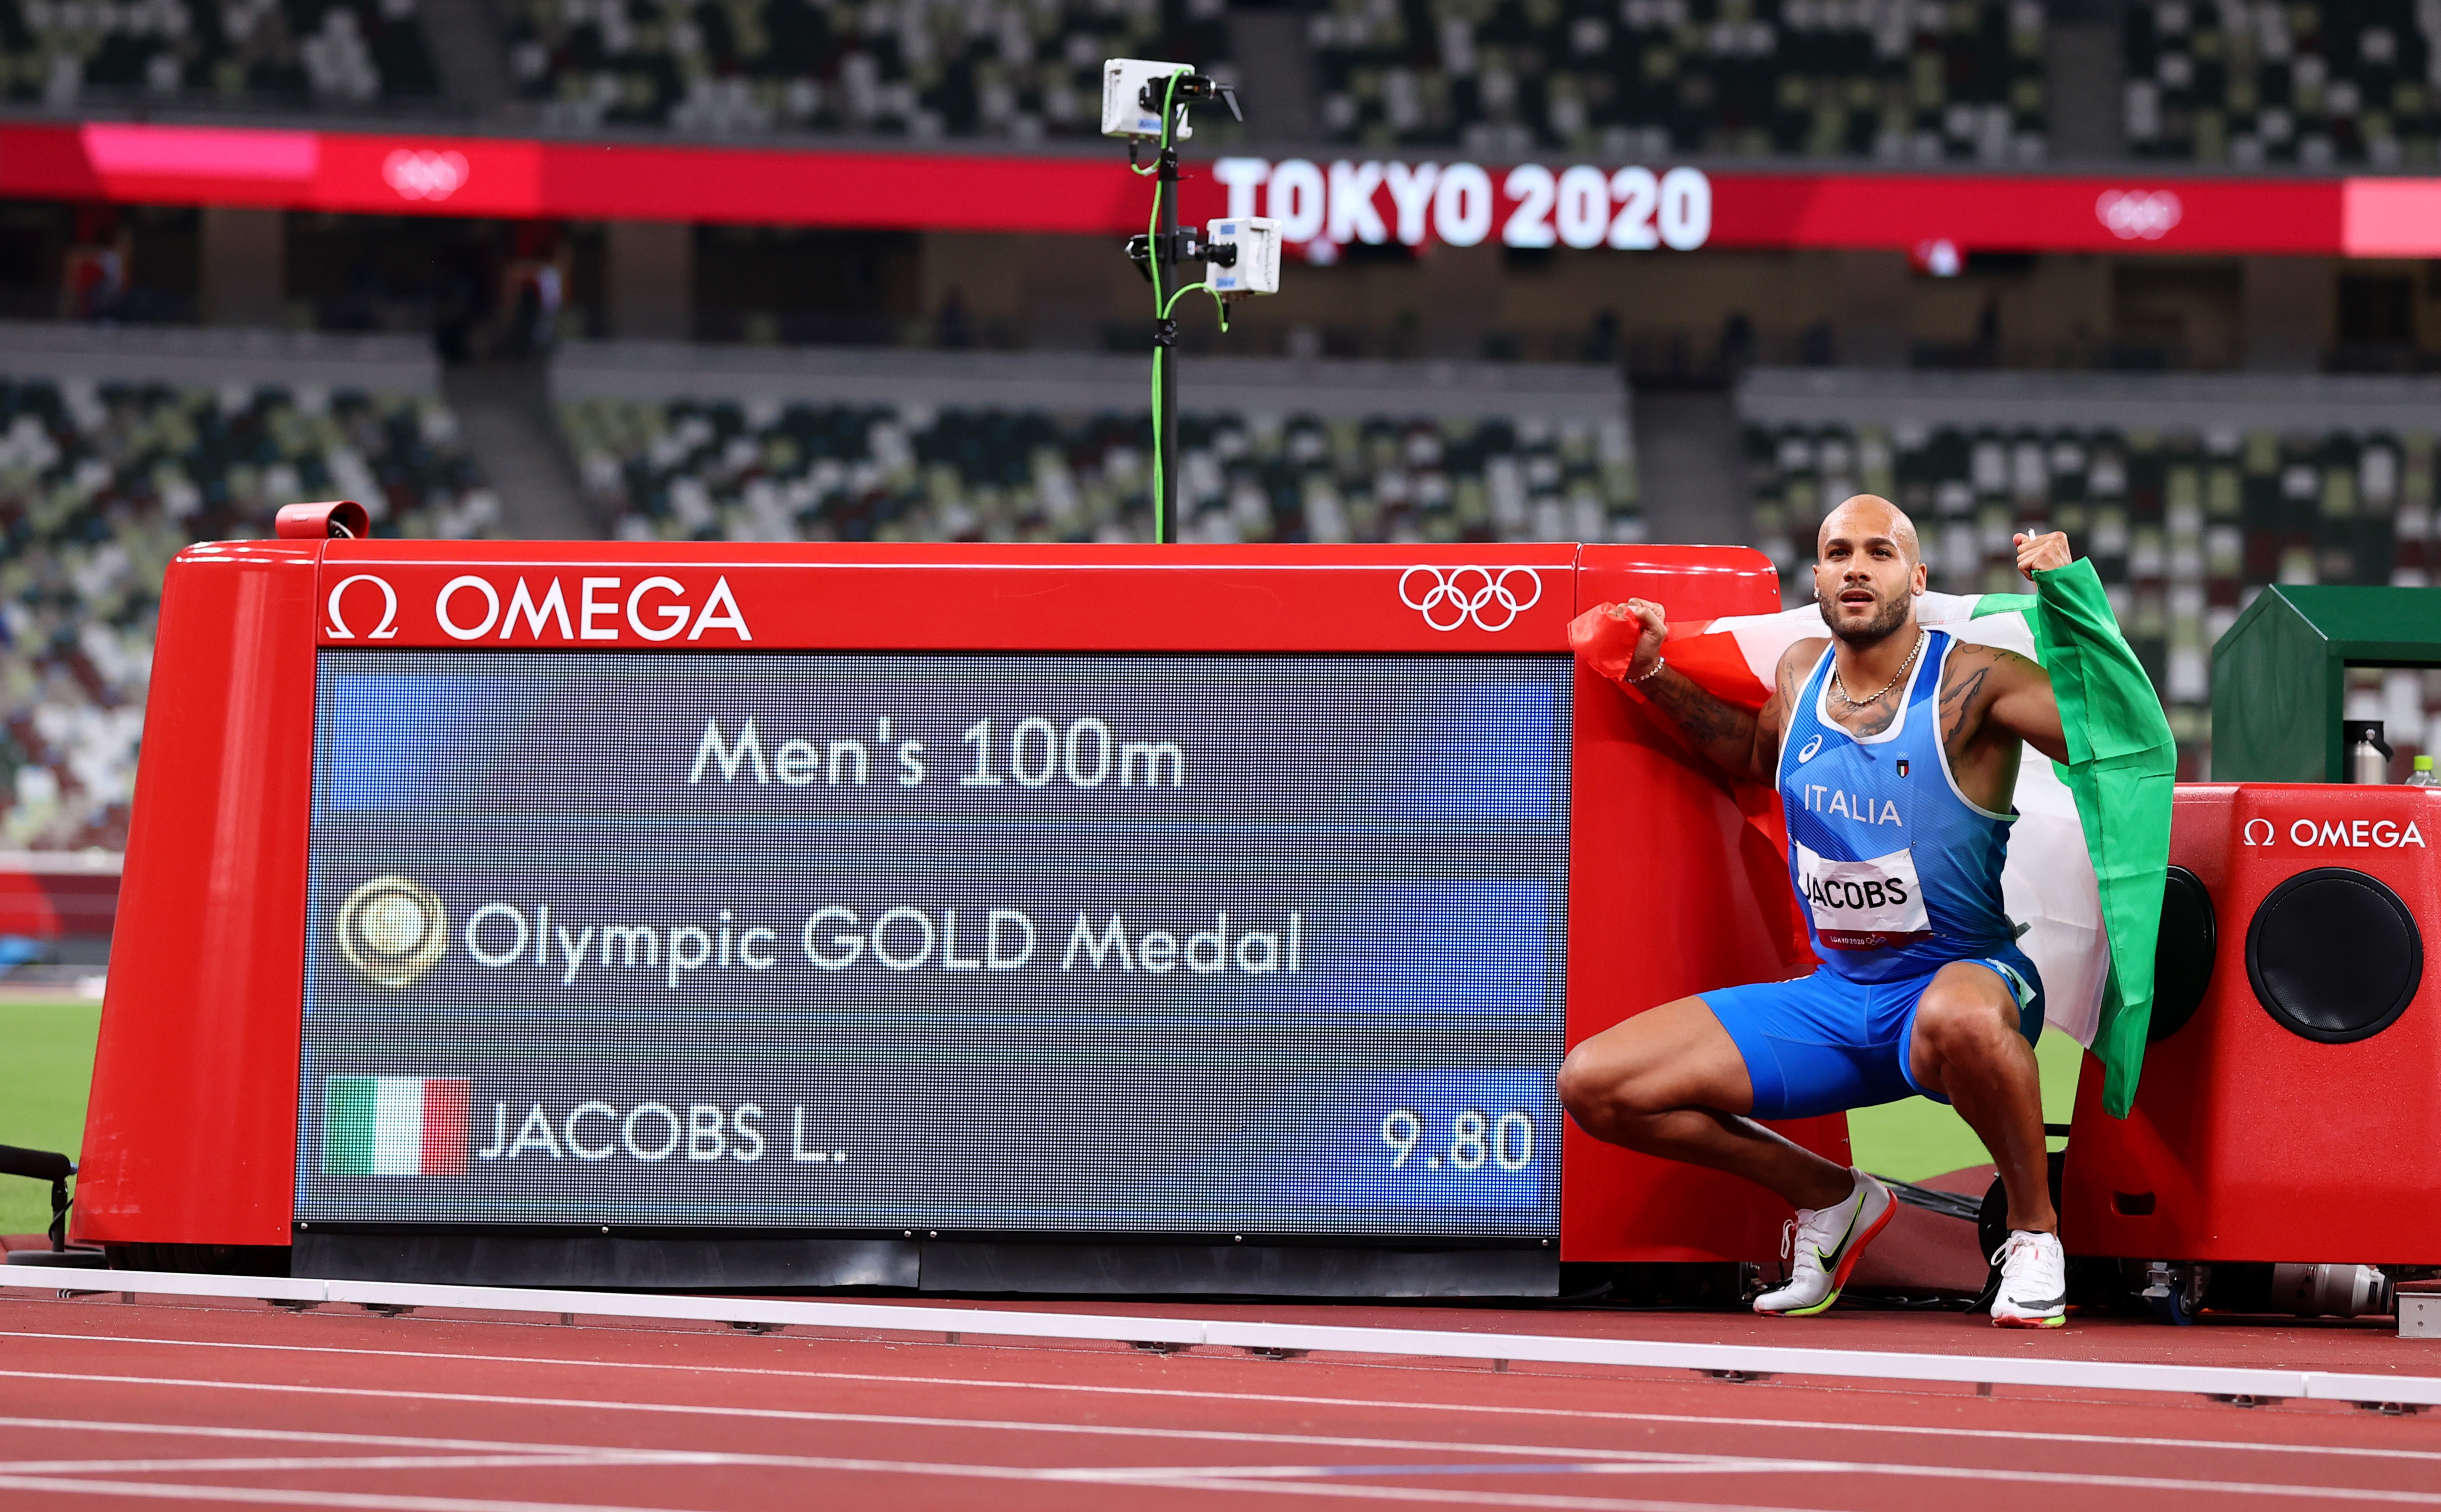 2020 도쿄올림픽 남자 100m 금메달리스트 마르셀 제이컵스